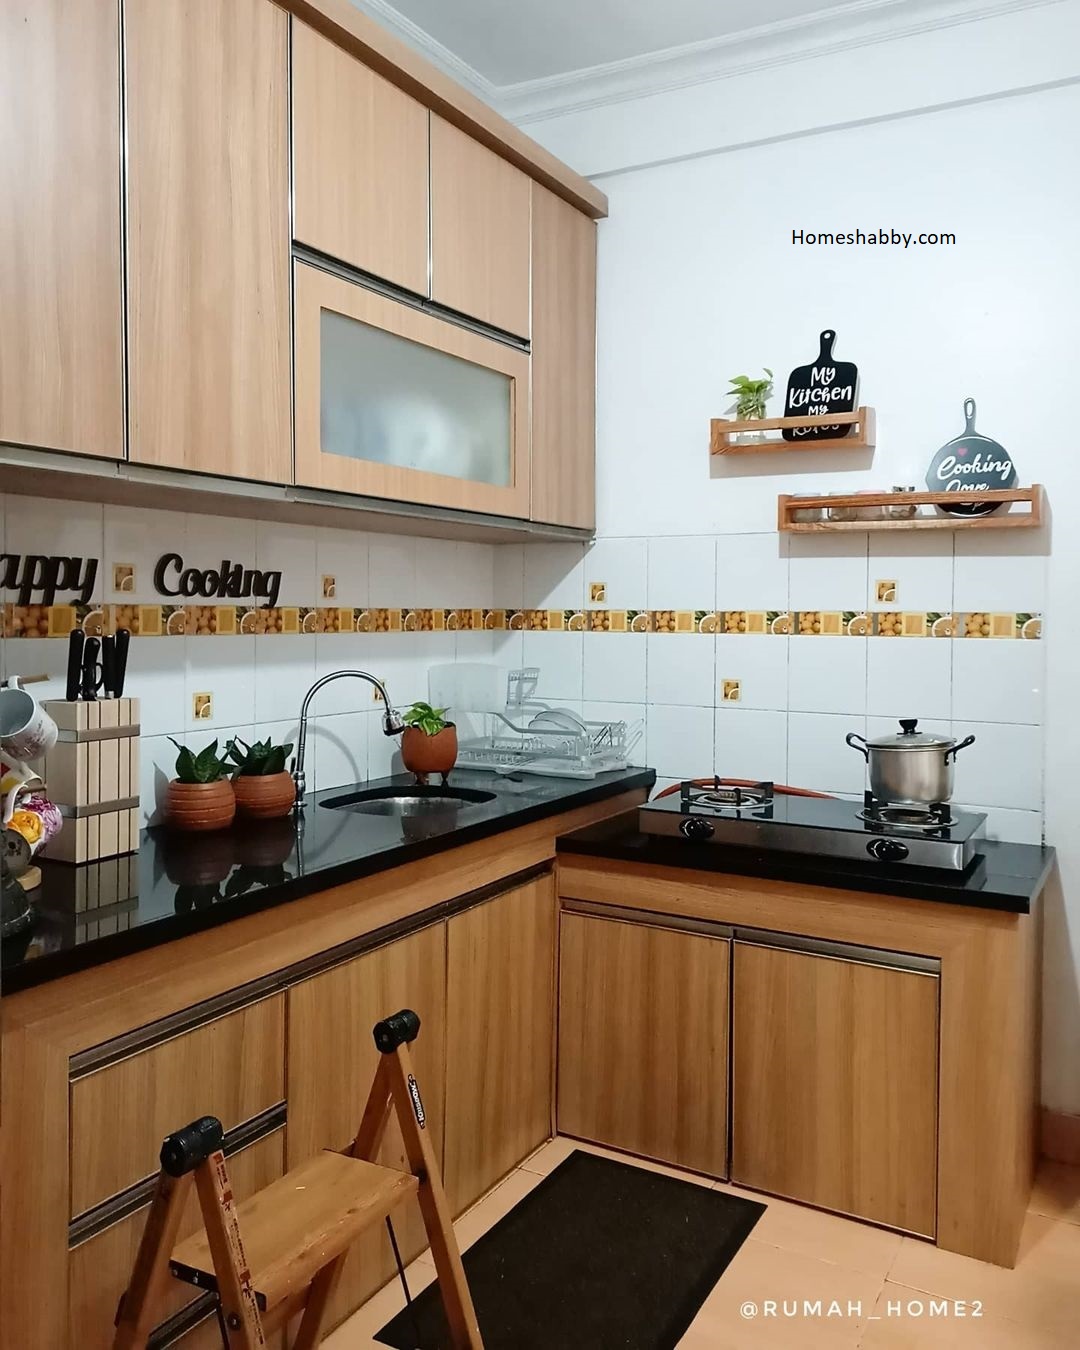 7 Rekomendasi Desain Dapur Minimalis Rumah Type 36 Ukuran 2 X 2 M Nyaman Dan Hemat Homeshabbycom Design Home Plans